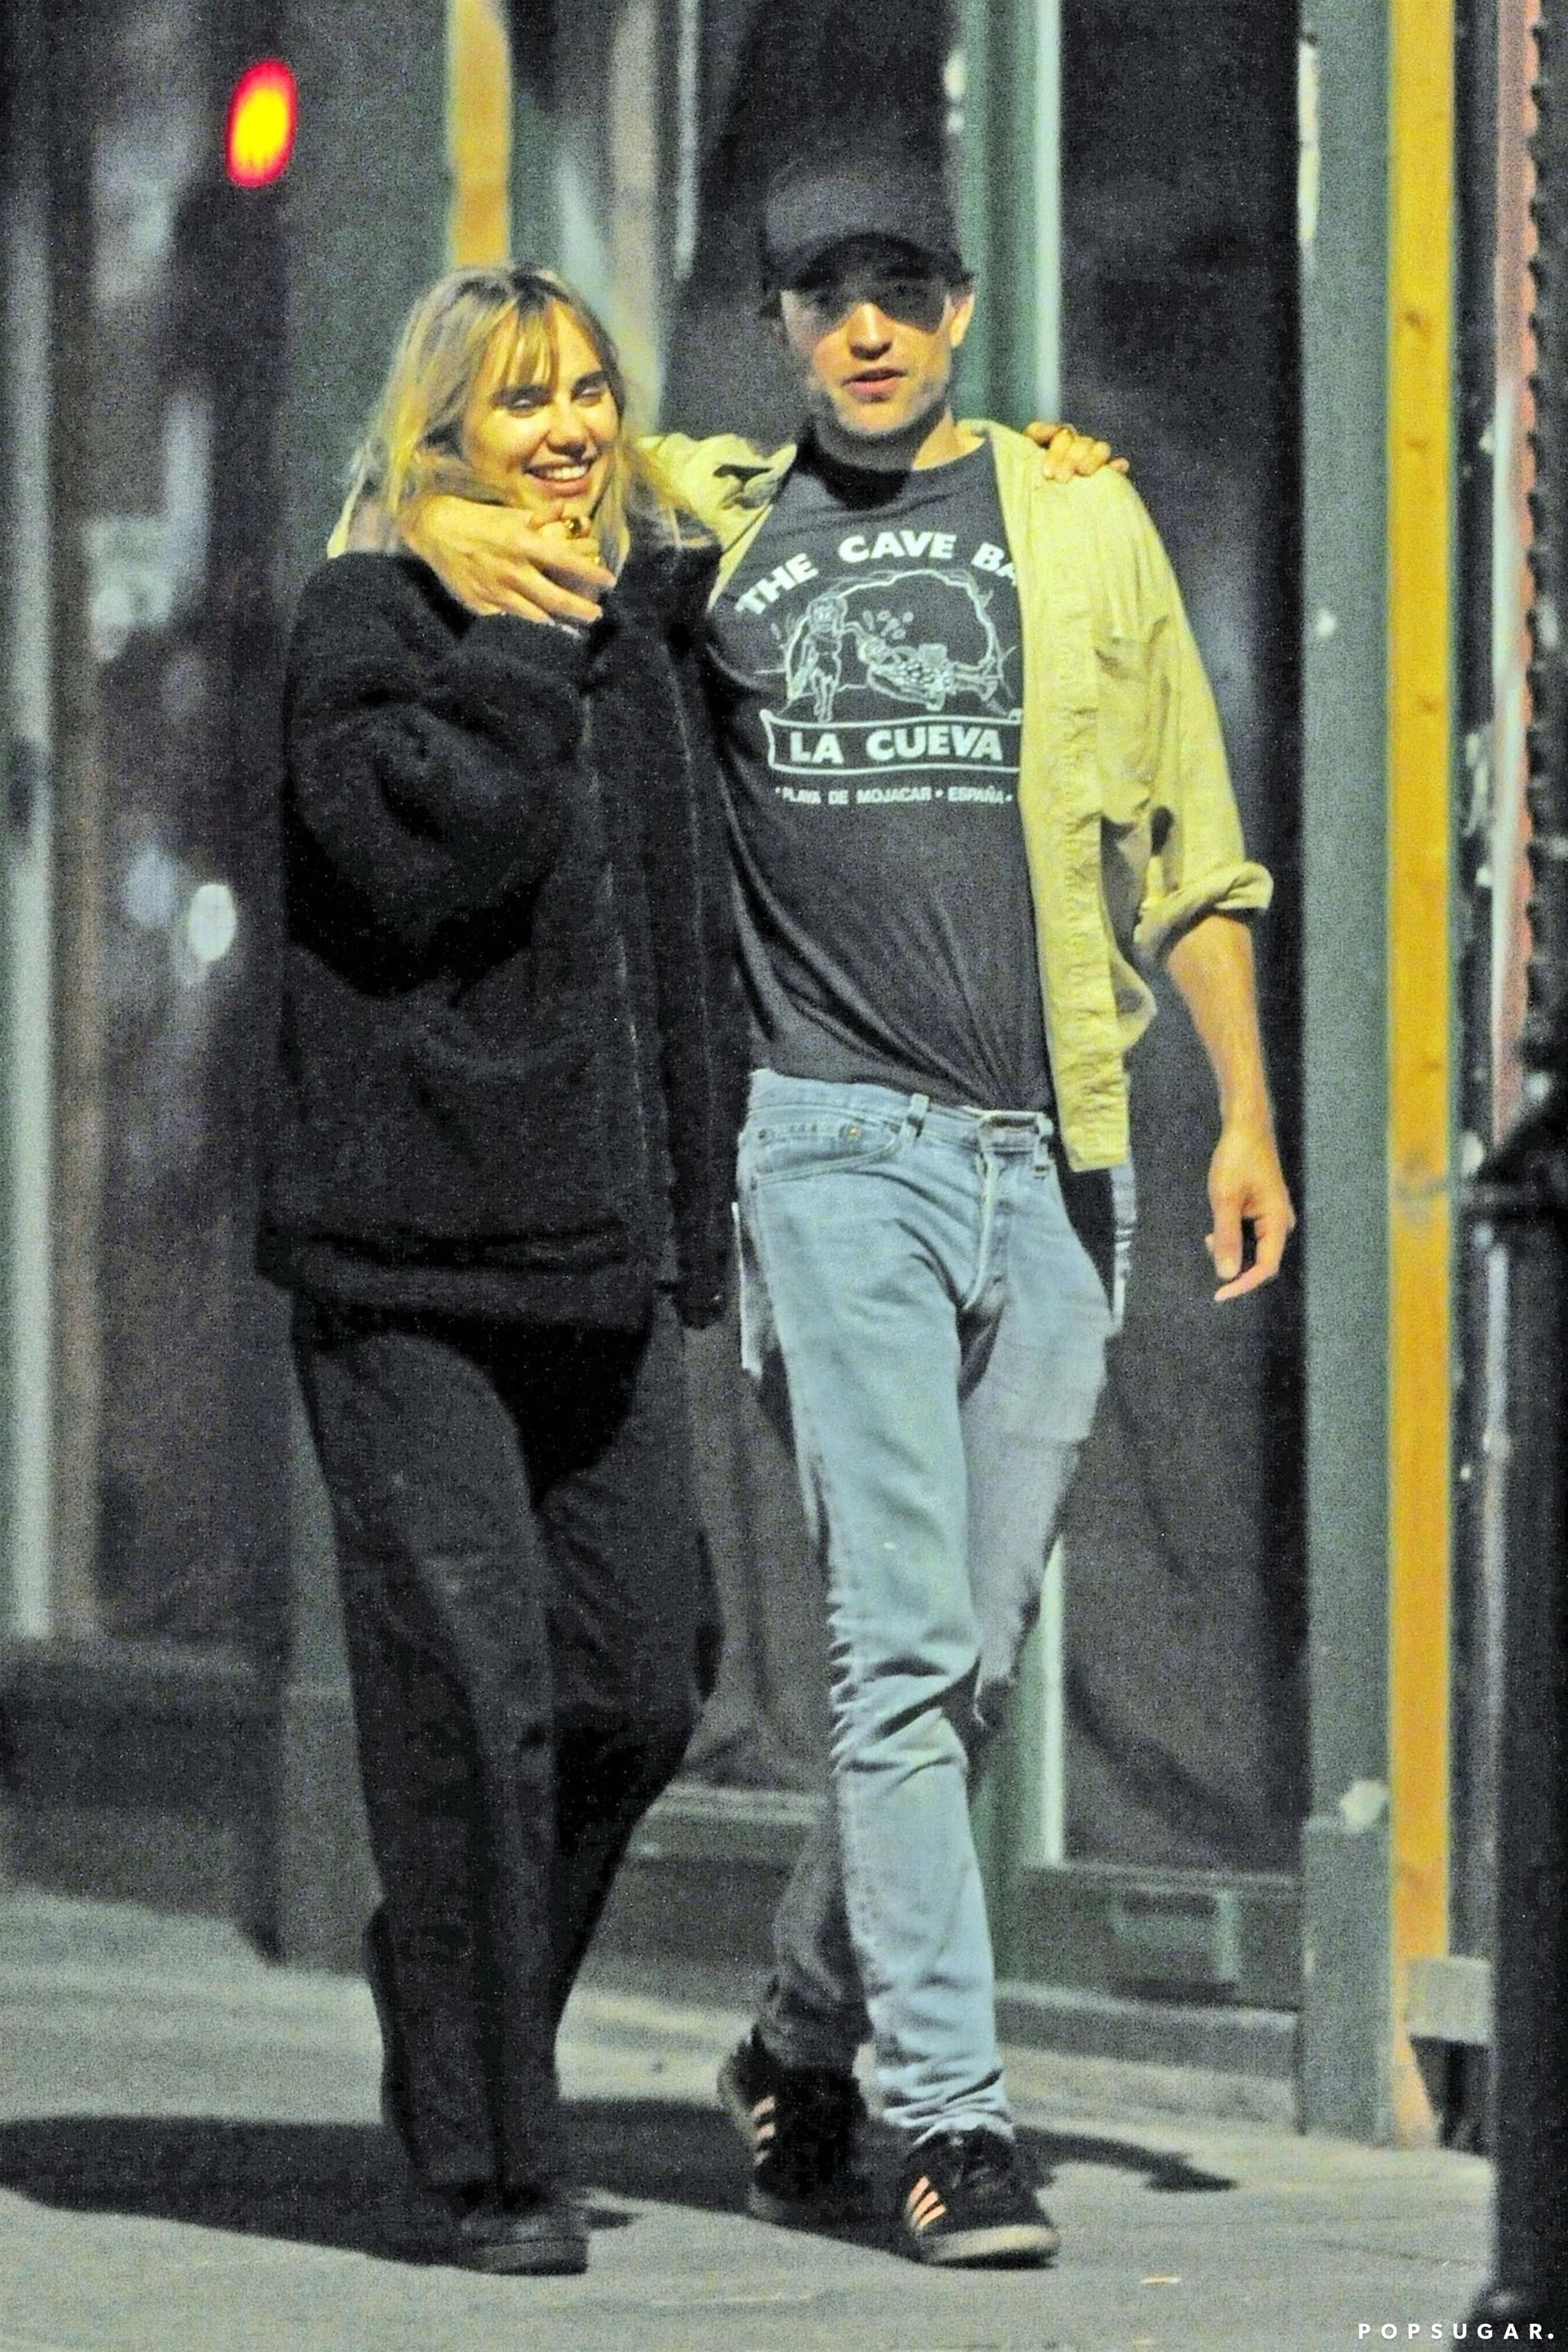 Ma cà rồng Robert Pattinson và bạn gái người mẫu lần đầu công khai lộ diện sau 4 năm yêu, visual cả đôi gây xôn xao - Ảnh 7.